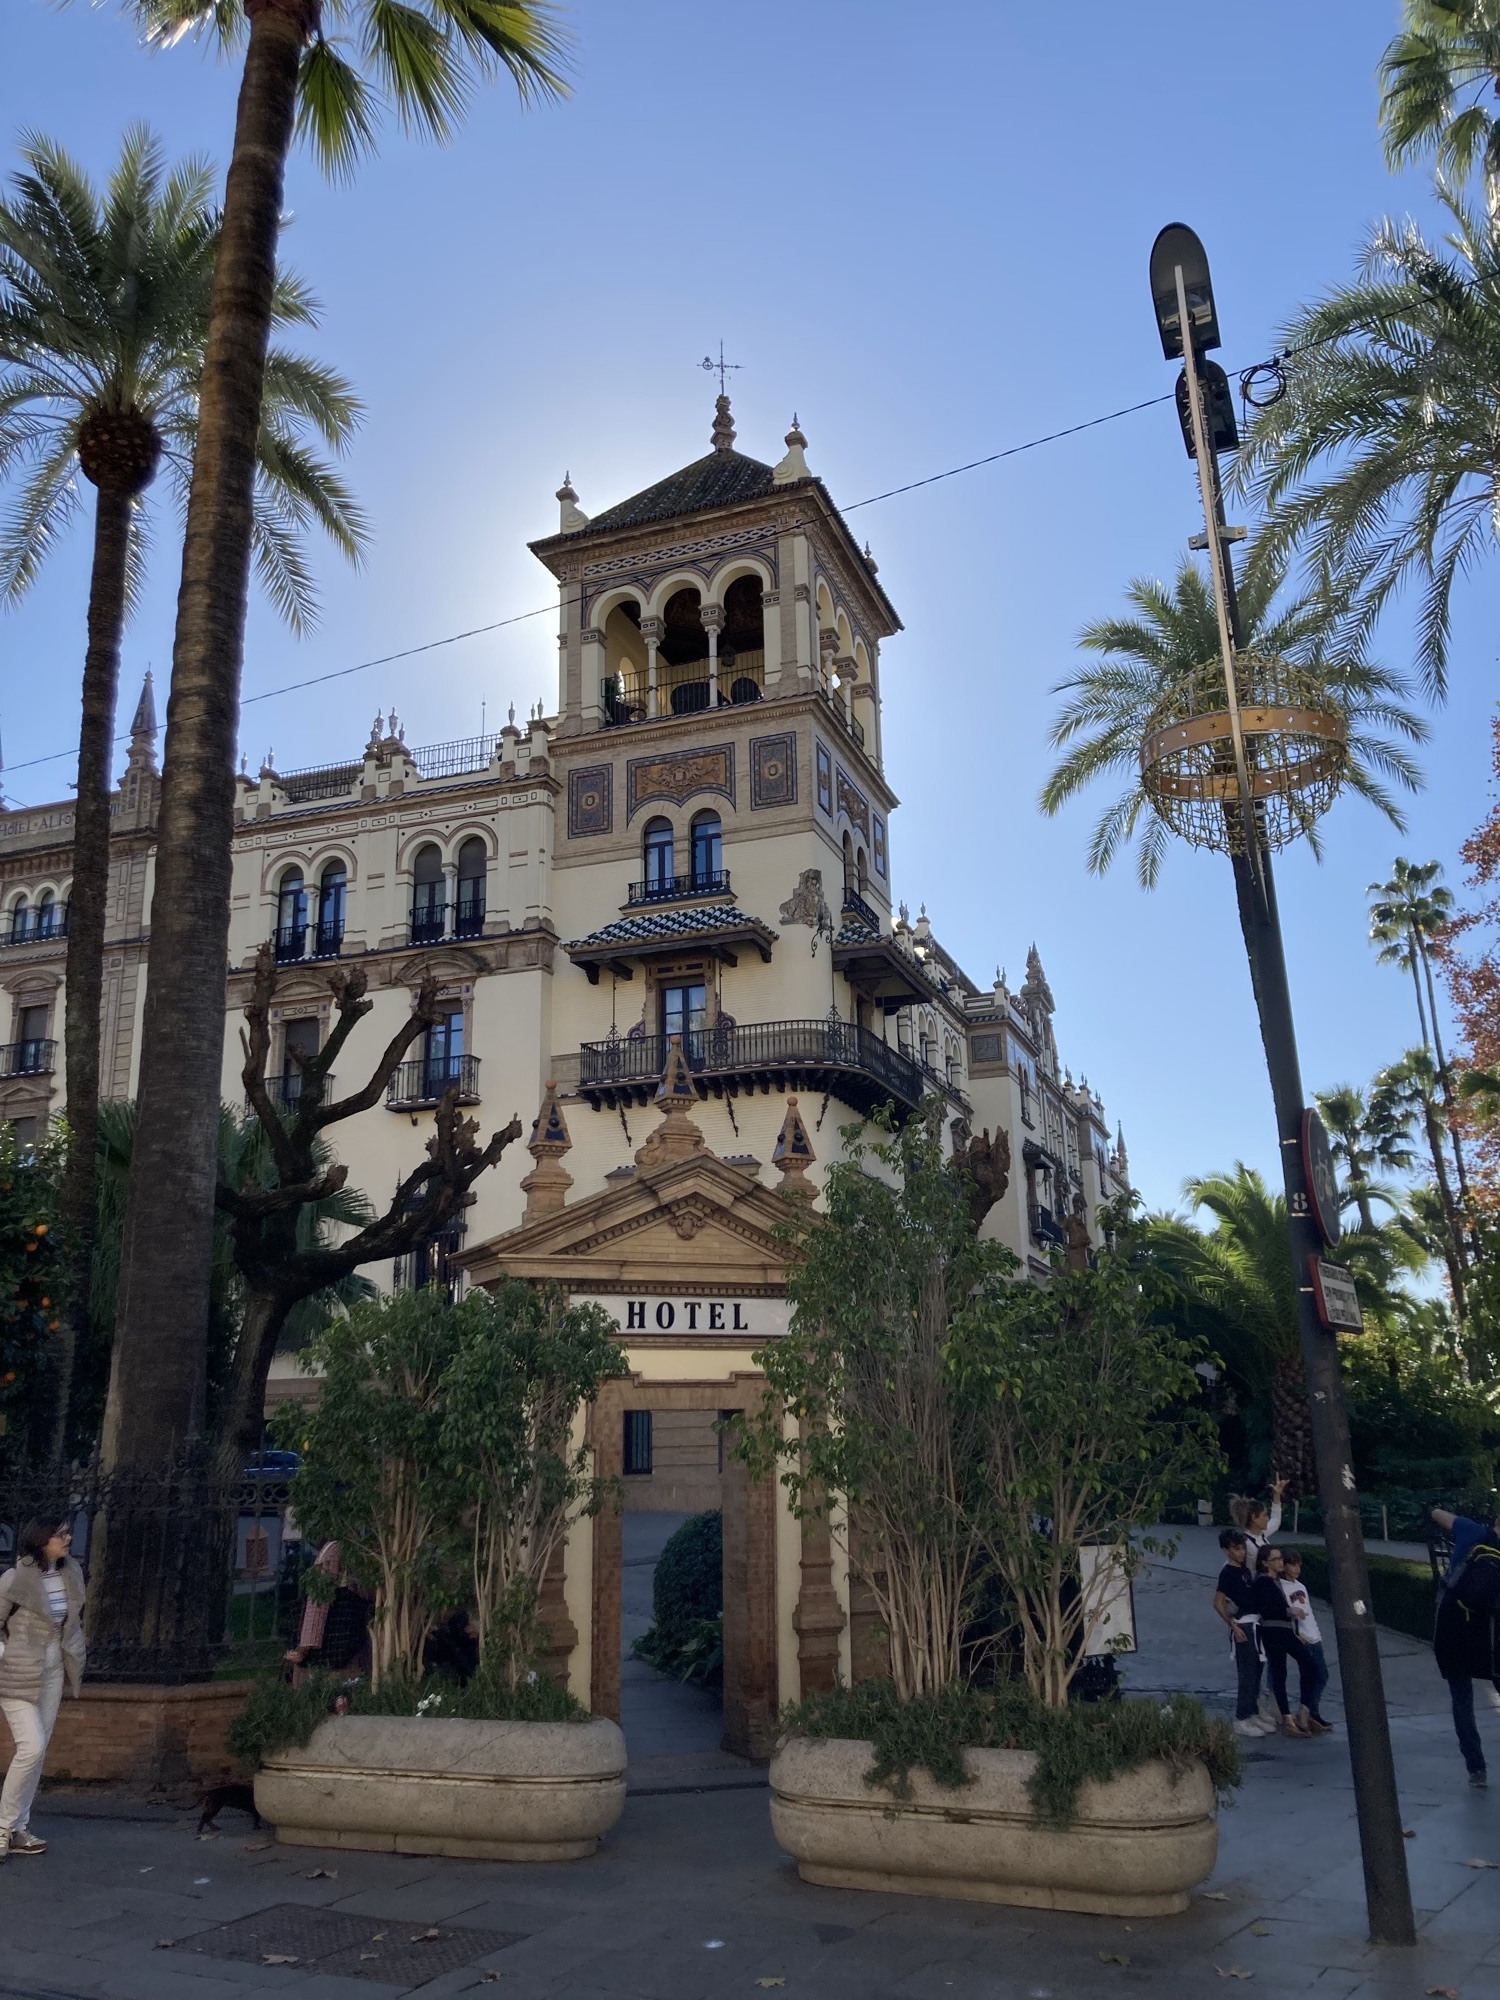 Hotel Alfonso XIII, Eckturm des Hauses mit unzähligen Verzierungen aus Keramikmosaiken, schmiedeeisernen Gittern, Rundbögen und Ziergiebeln, direkt hinter dem Turm ist die Sonne verdeckt und verleiht dem Turm somit ein Glühen, links und rechts Palmen, sowie eine Straßenlaterne mit Weihnachtsdekoration